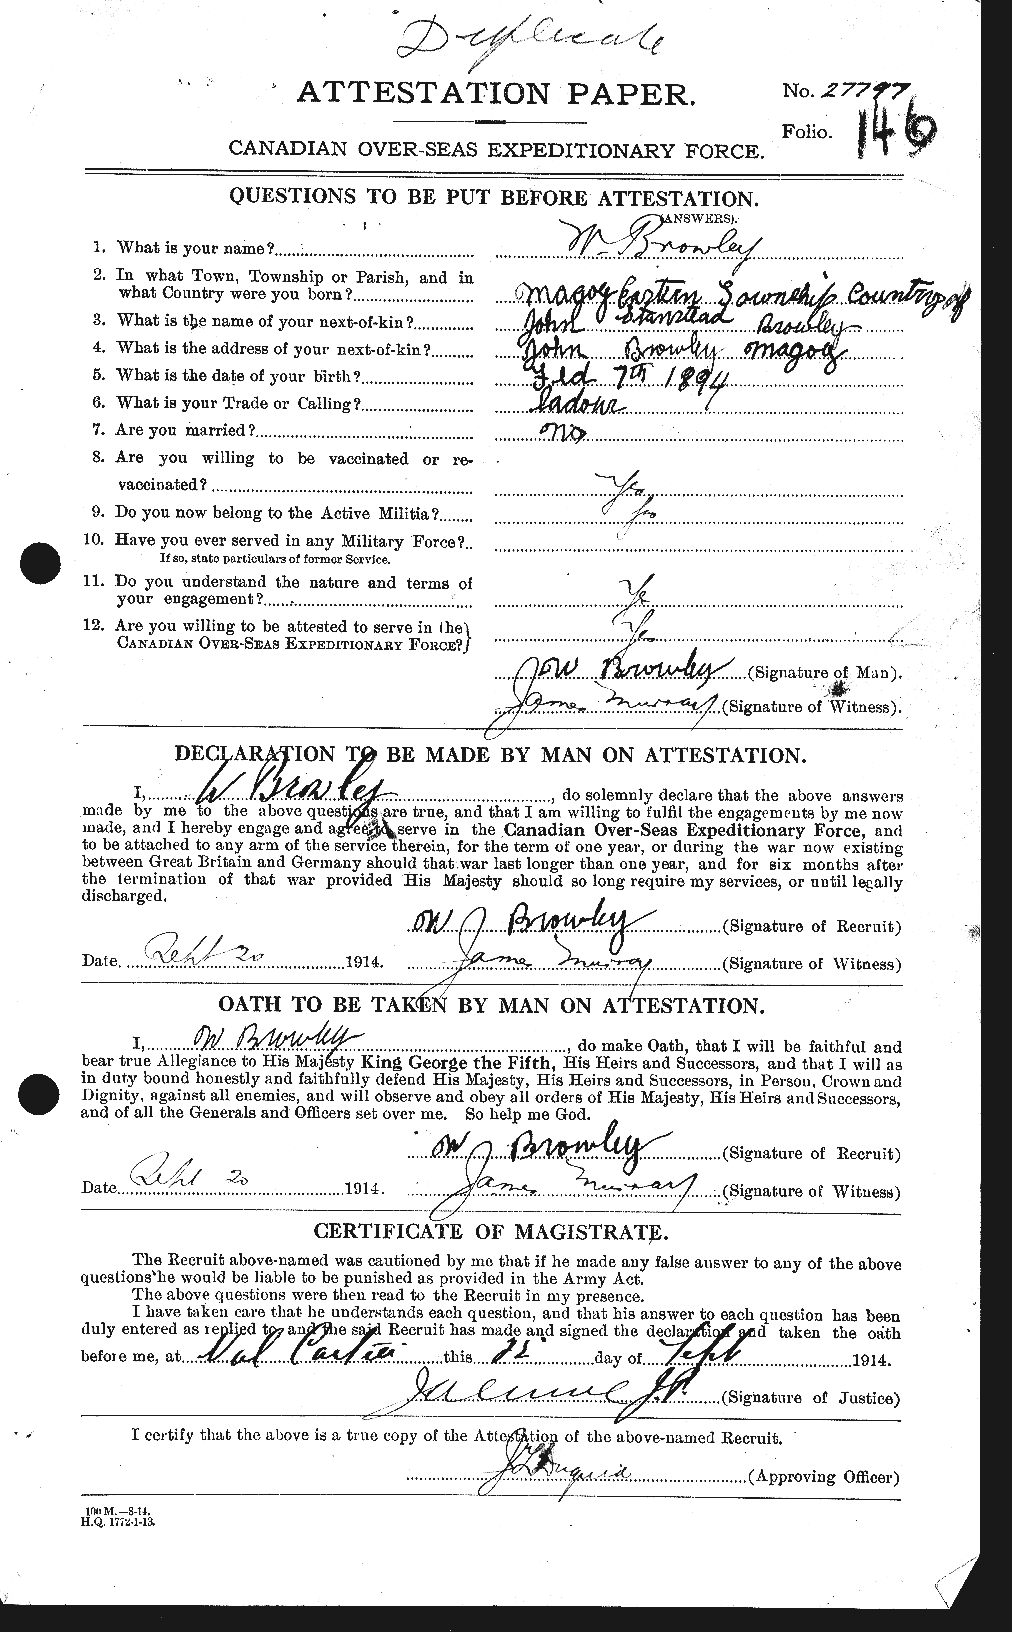 Dossiers du Personnel de la Première Guerre mondiale - CEC 266850a